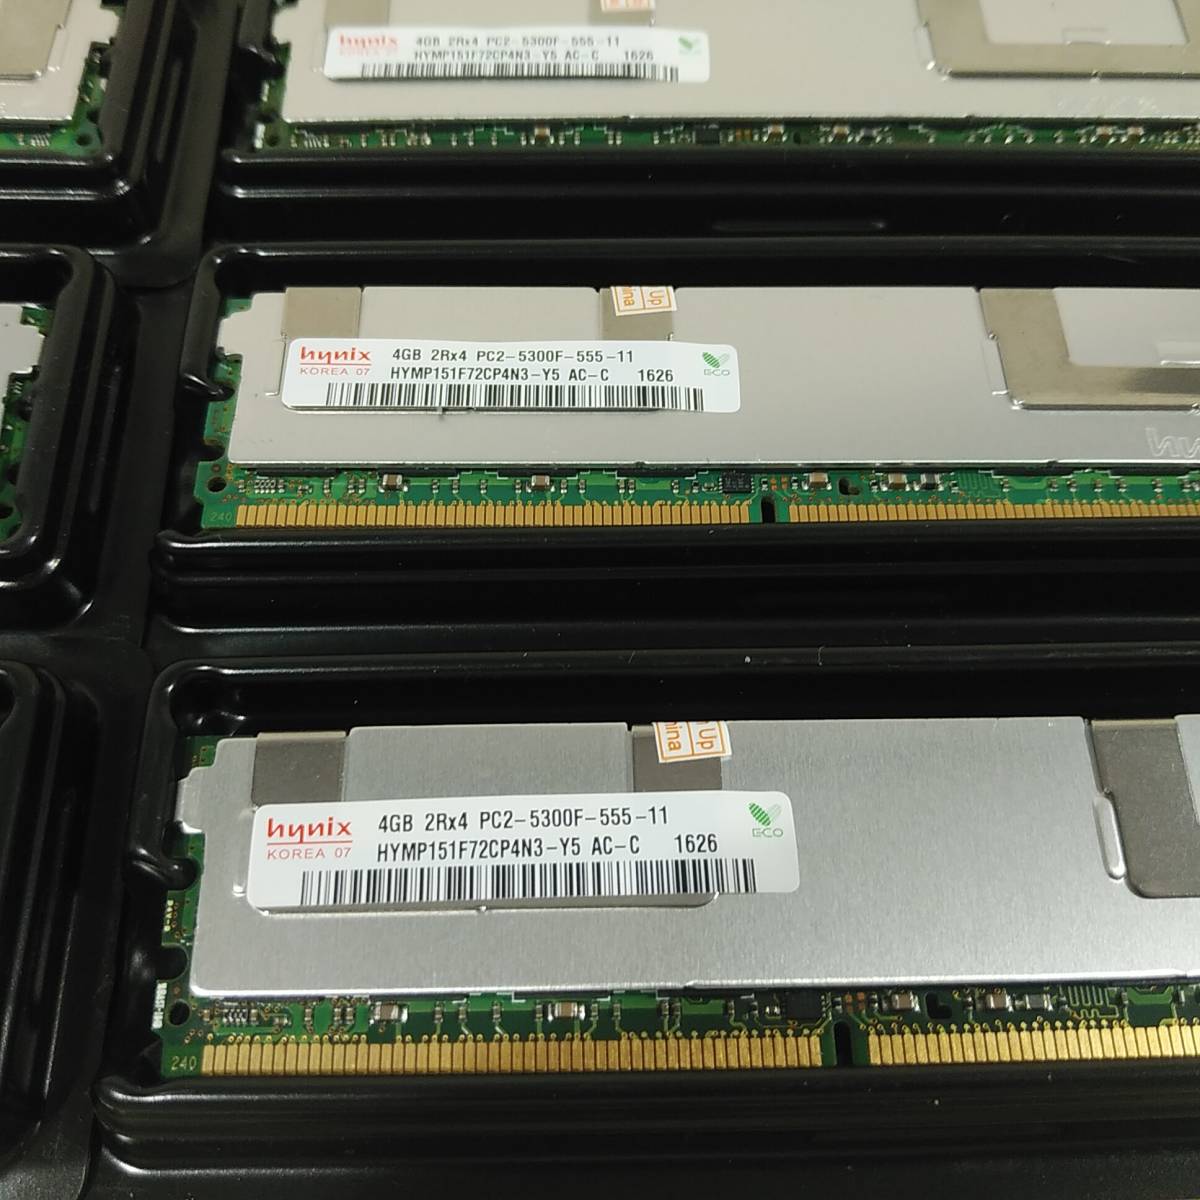  новый товар Hynix 32GB(4GB×8 листов ) DDR2-667 PC2-5300F FB-DIMM 2Rx4 CL5 ECC сервер для память стоимость доставки 185 иен ~